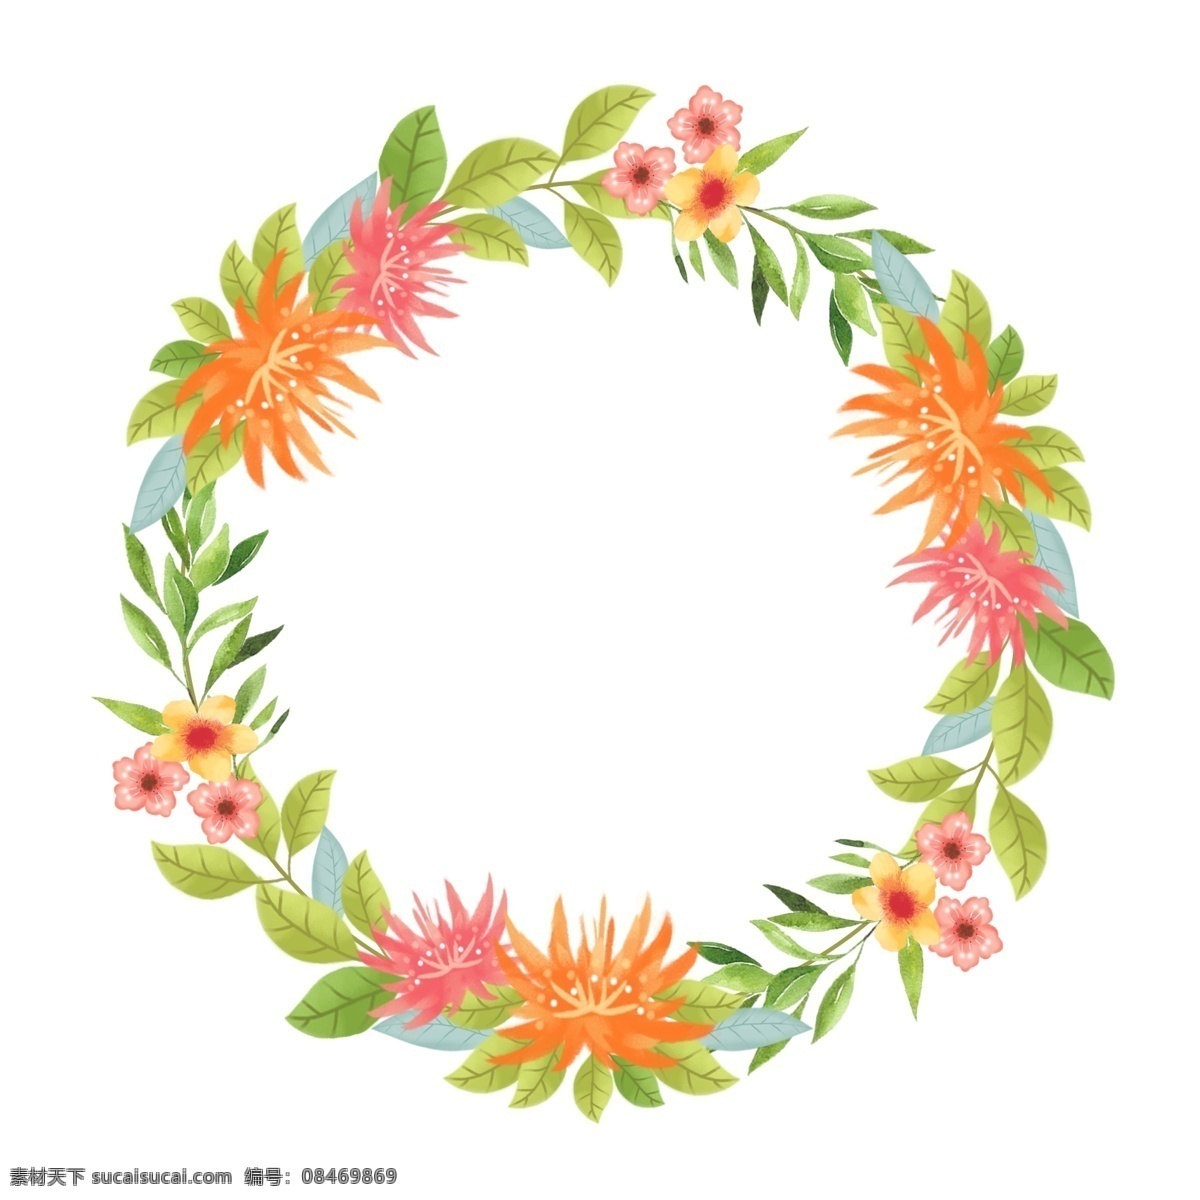 圆形 卡通 手绘 清新 花卉 植物 边框 对话框 唯美 花朵 叶子 插画 花 手绘花 框